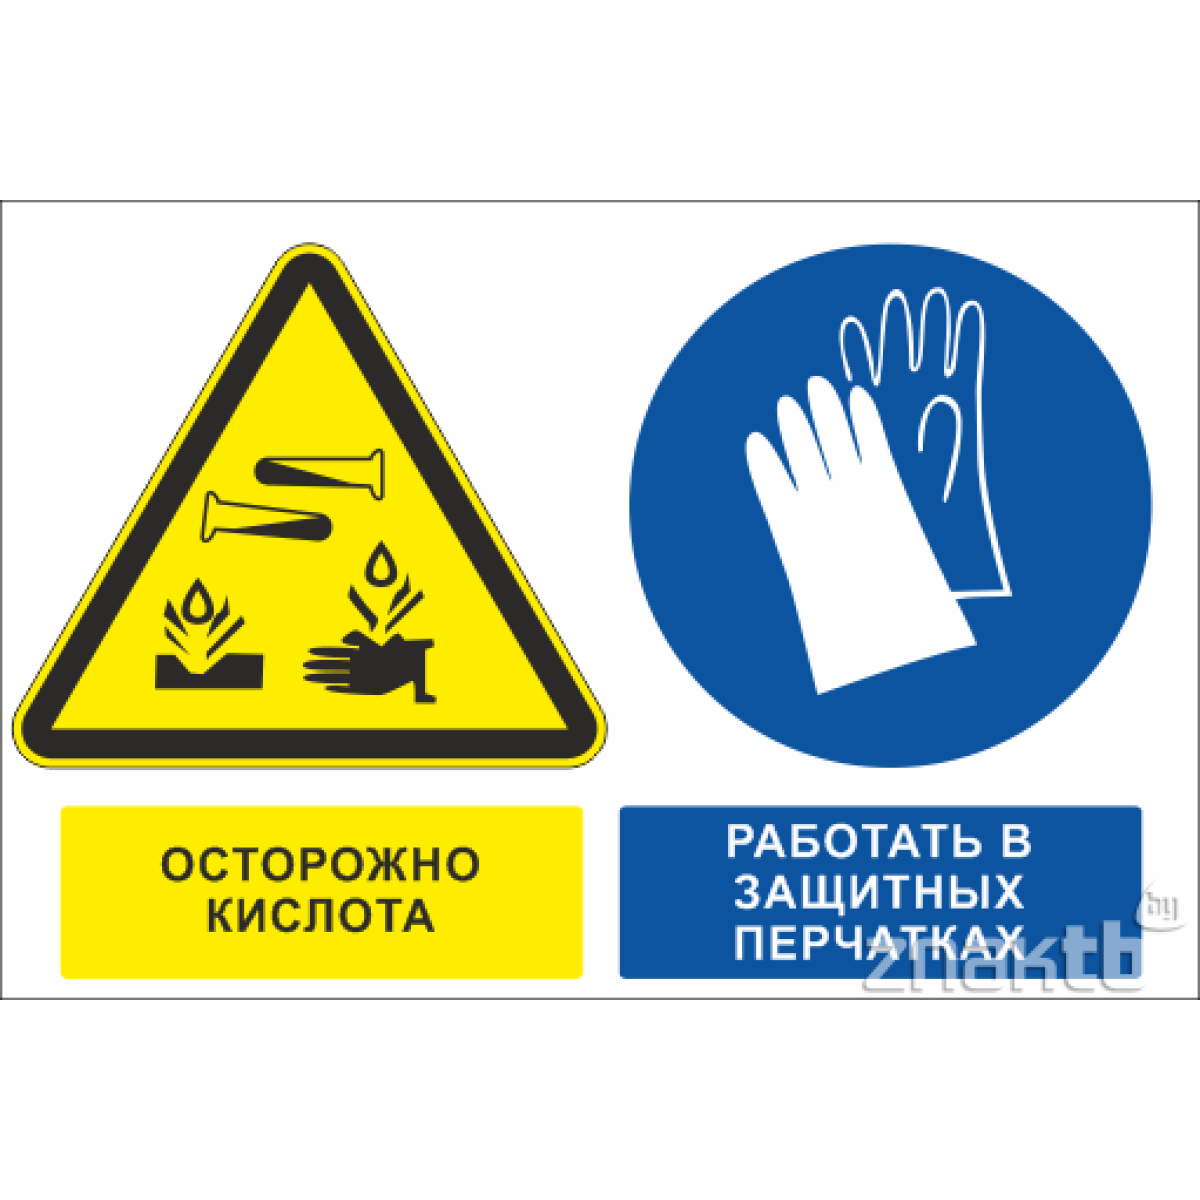 Знак Осторожно кислота, работать в защитных перчатках